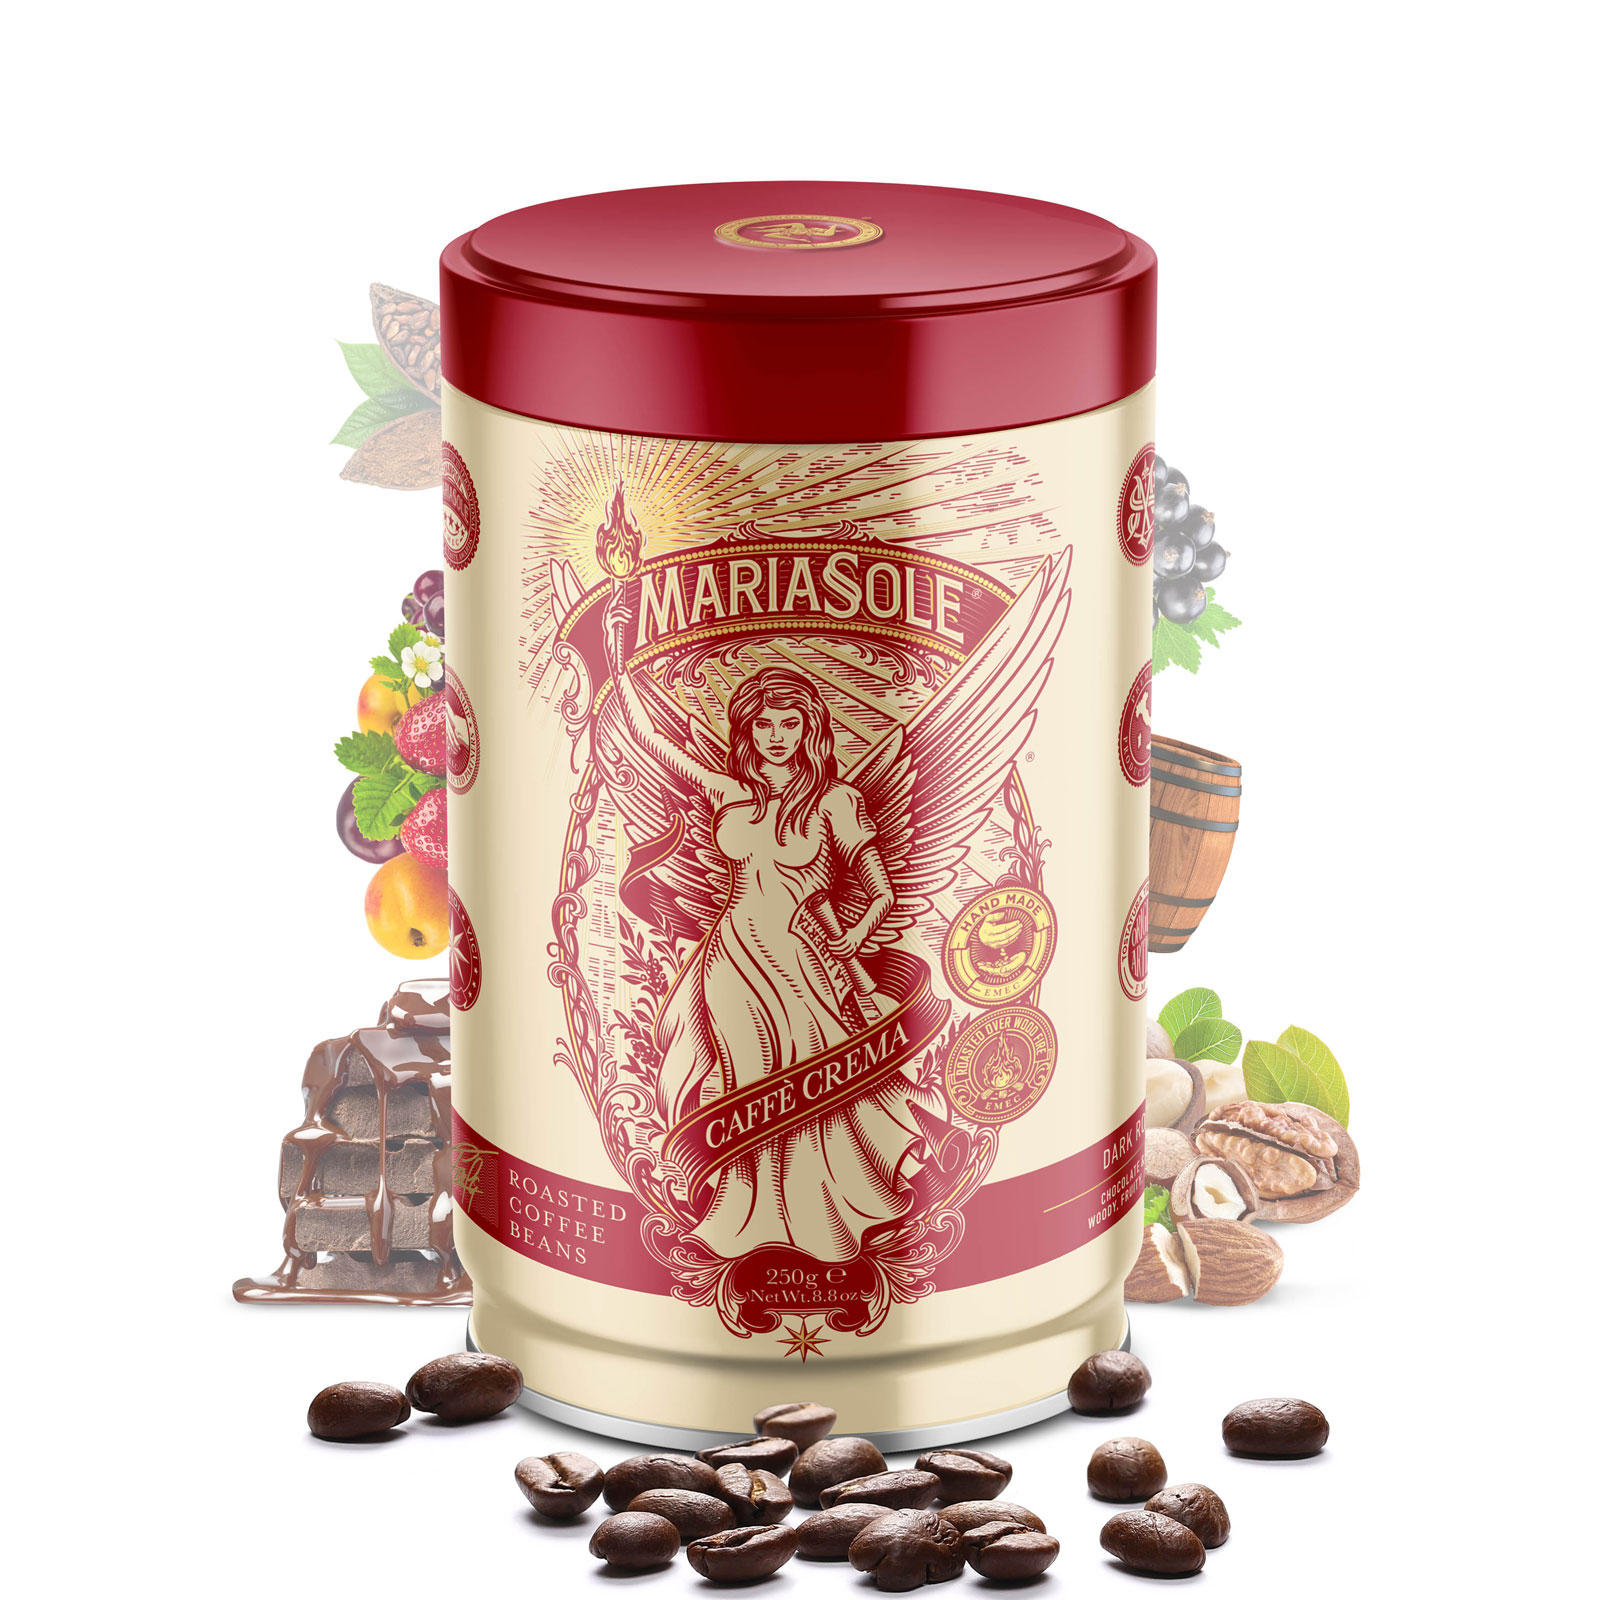 MARIASOLE - Caffè Espresso - 250g - Beans